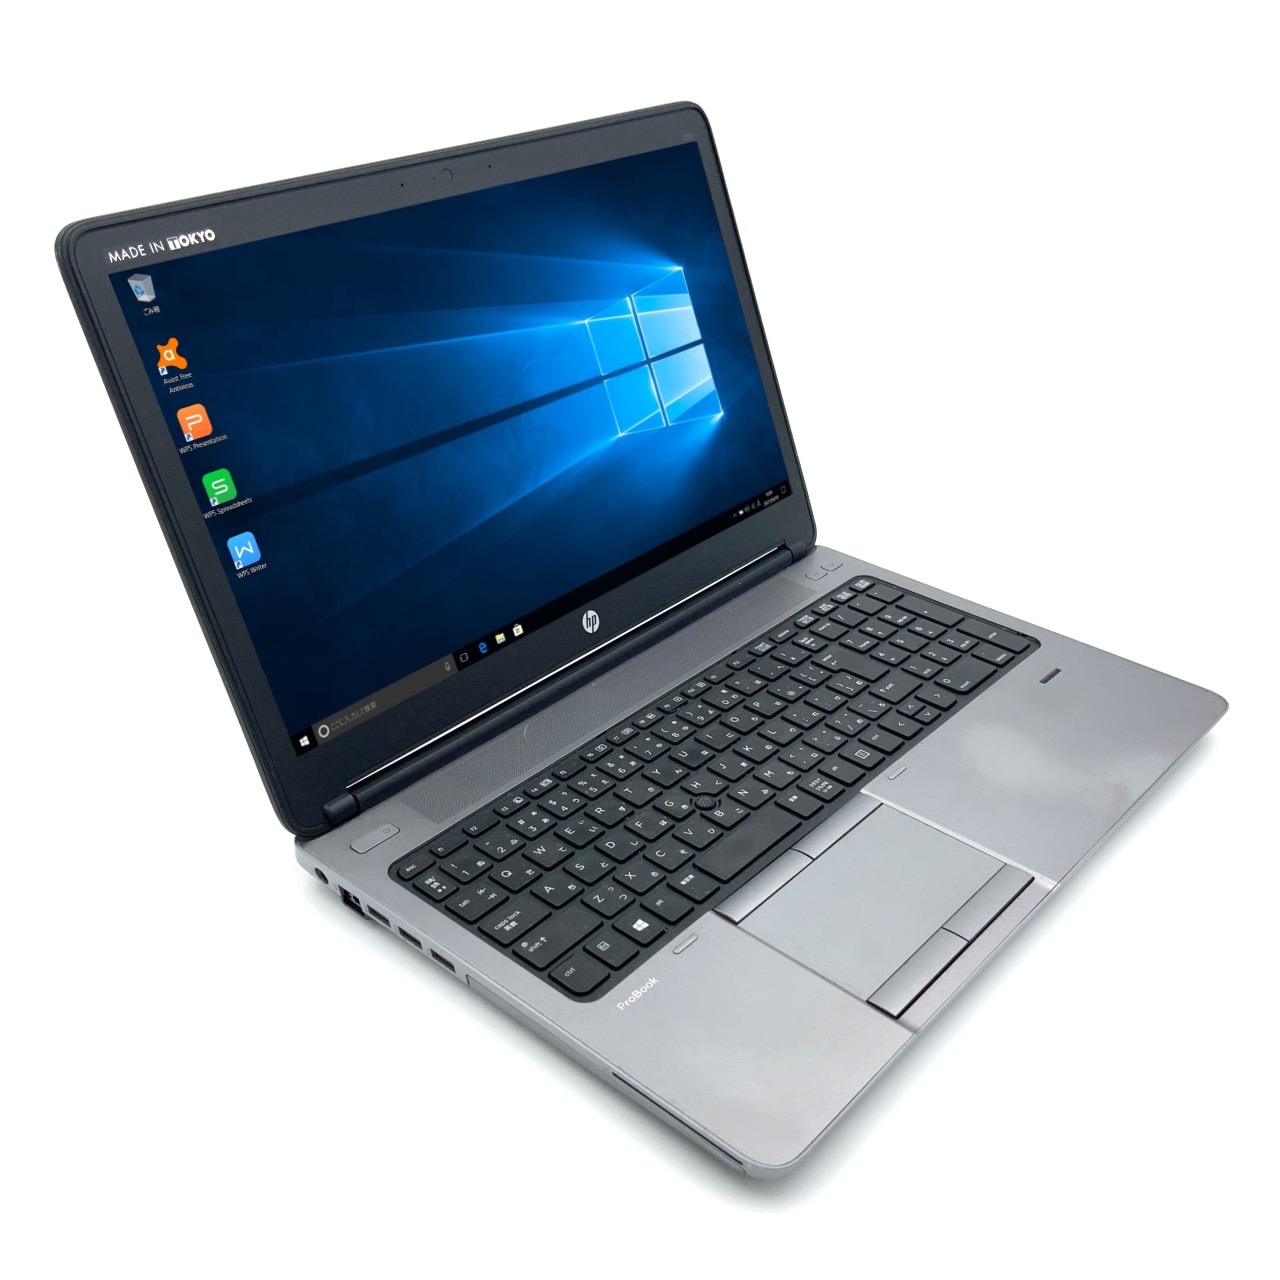 【楽天市場】【スタイリッシュ】 【テレワーク】 HP ProBook 650 G1 第4世代 Core i3 4000M/2.40GHz